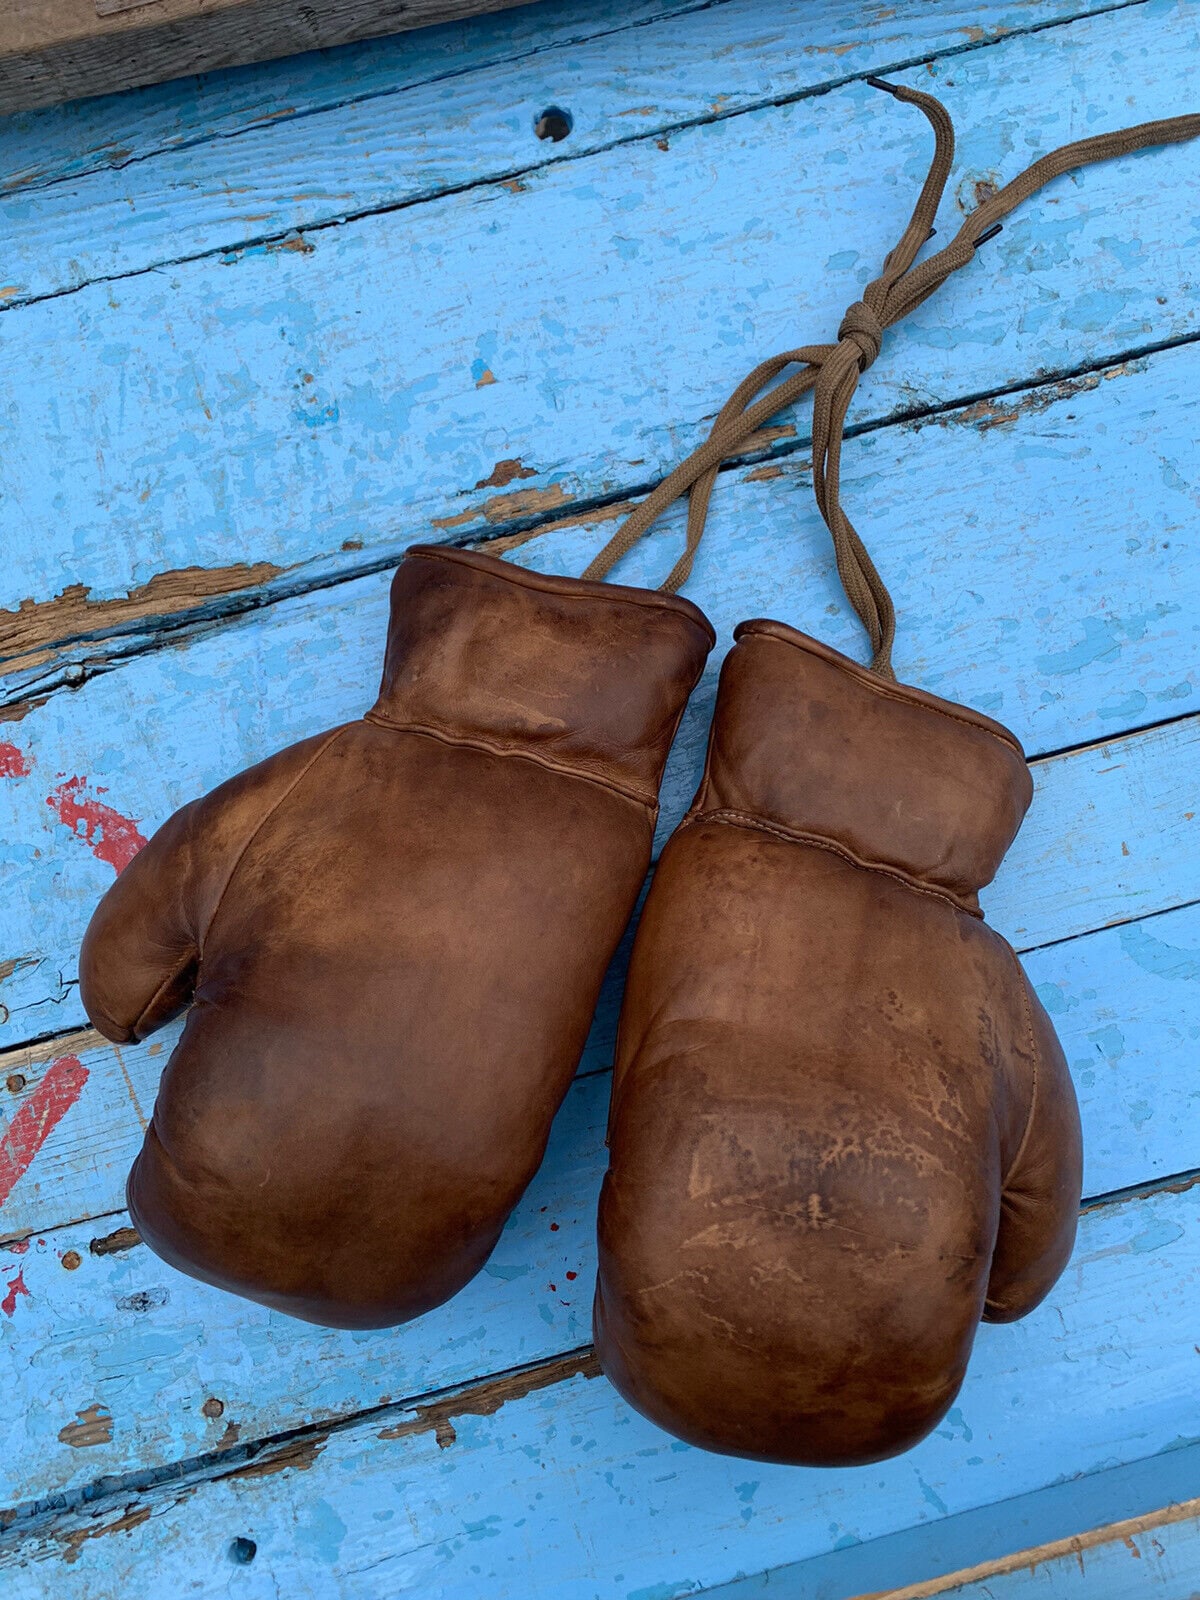 Poire de vitesse en cuir vintage pour la boxe punching ball personnalisable  -  Canada